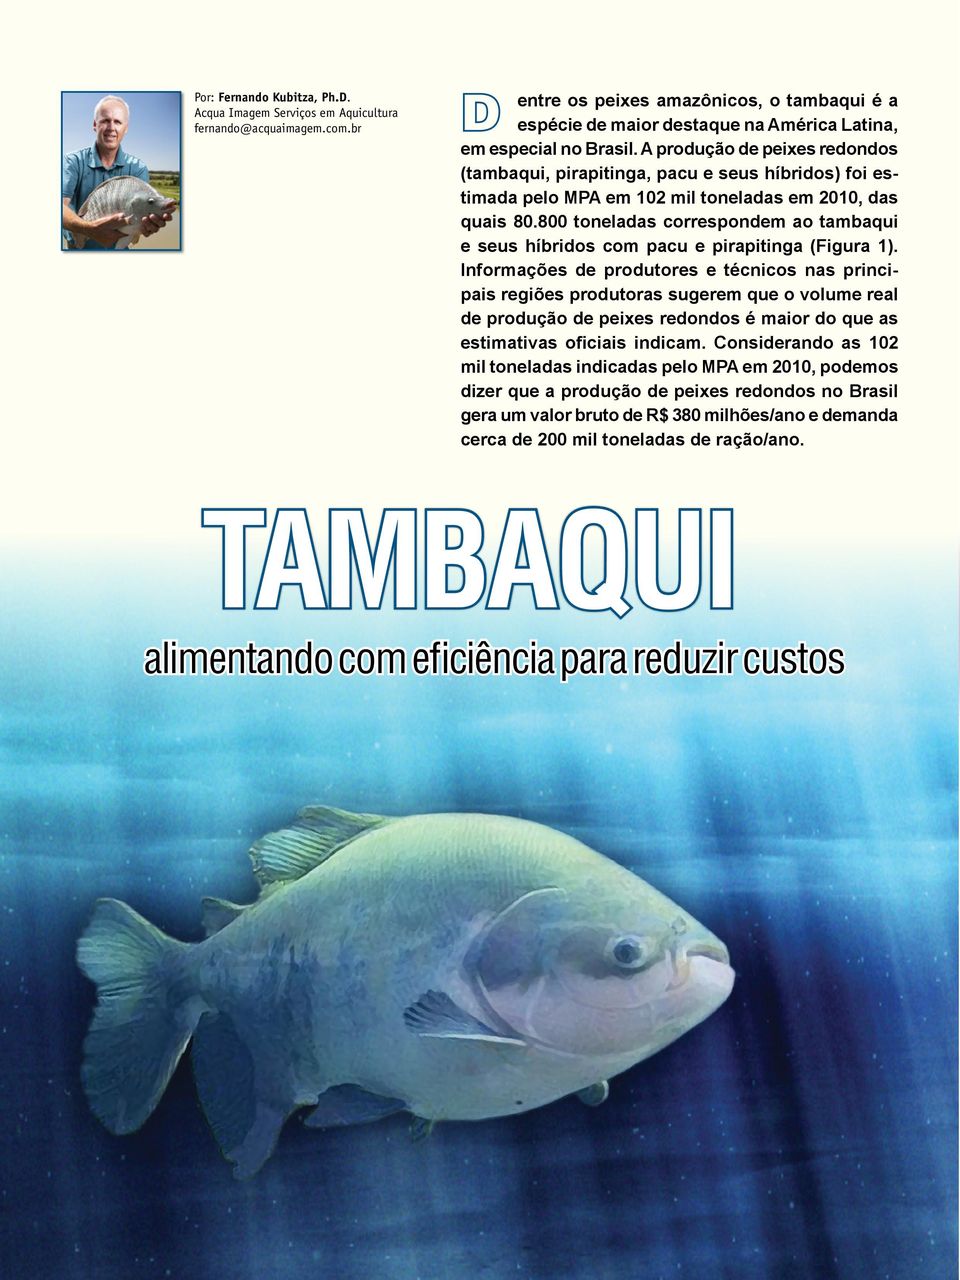 A produção de peixes redondos (tambaqui, pirapitinga, pacu e seus híbridos) foi estimada pelo MPA em 102 mil toneladas em 2010, das quais 80.